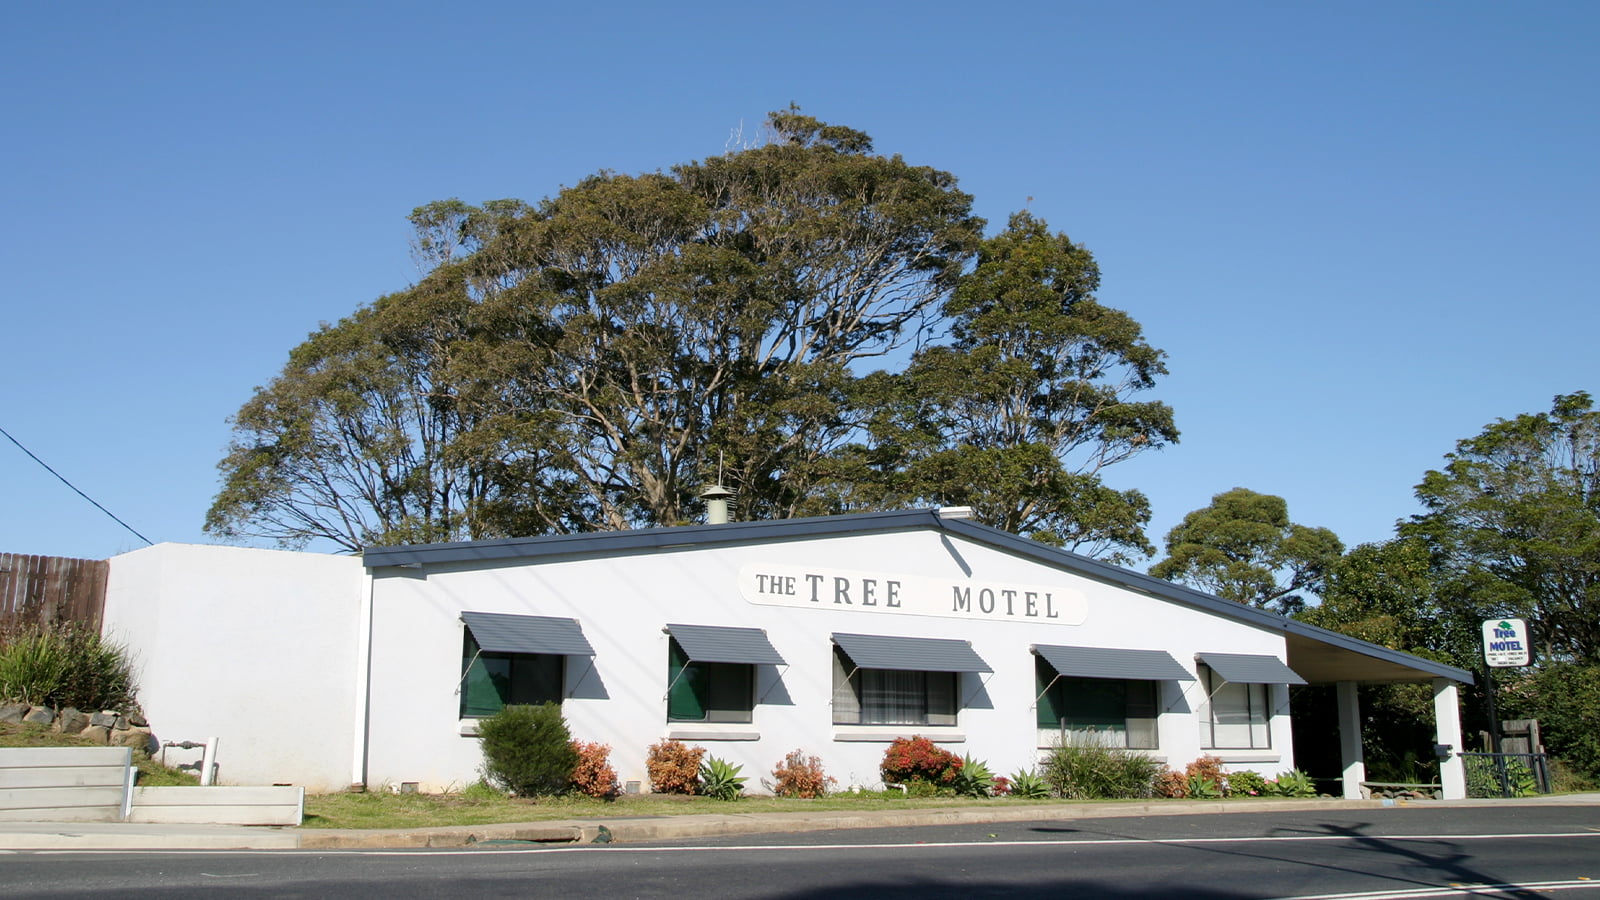 The Tree Motel